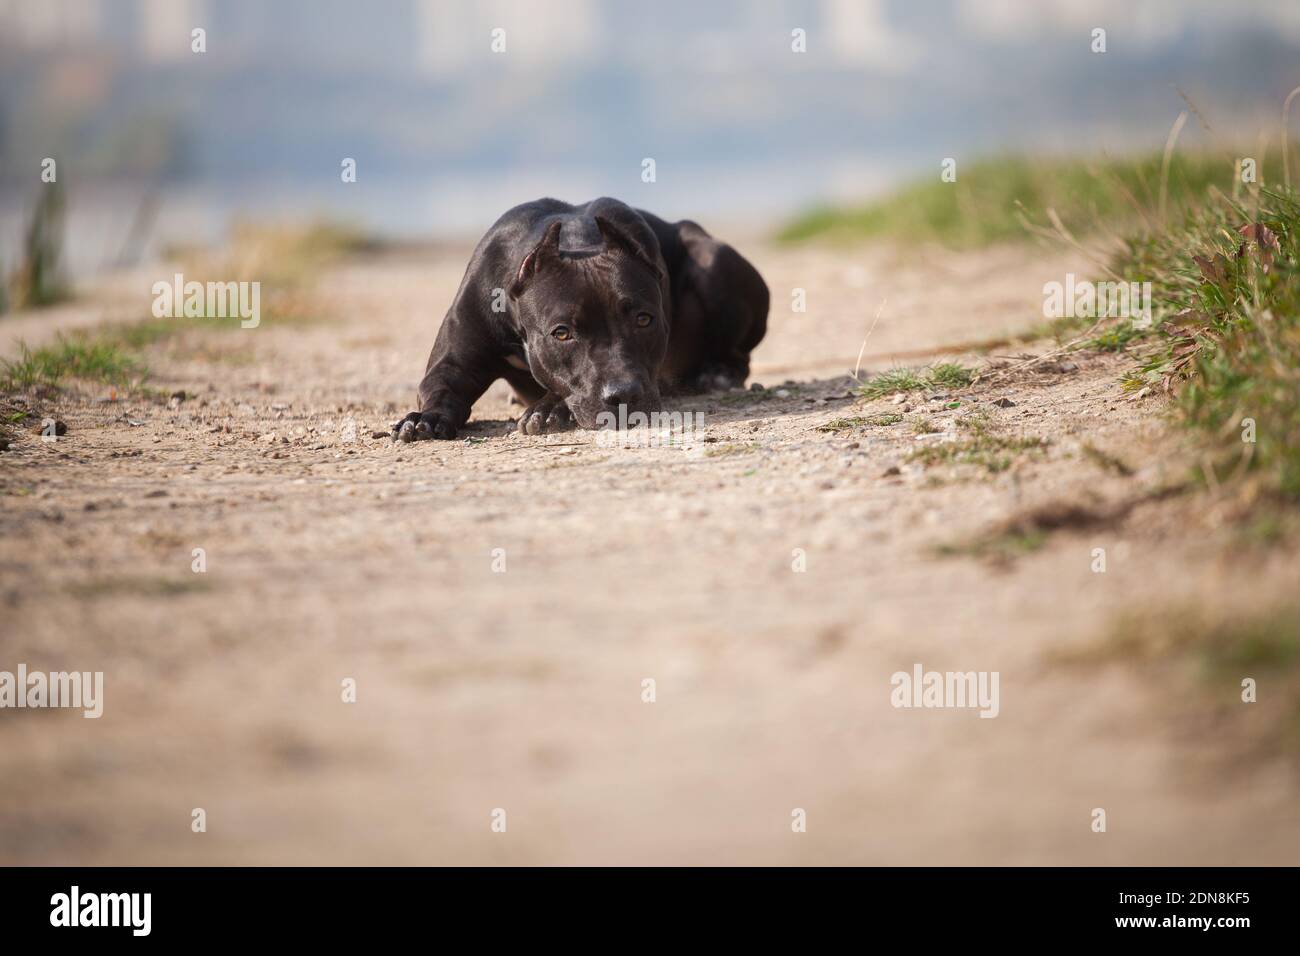 Triste perro negro roca American Staffordshire terrier se encuentra en la arena camino Foto de stock